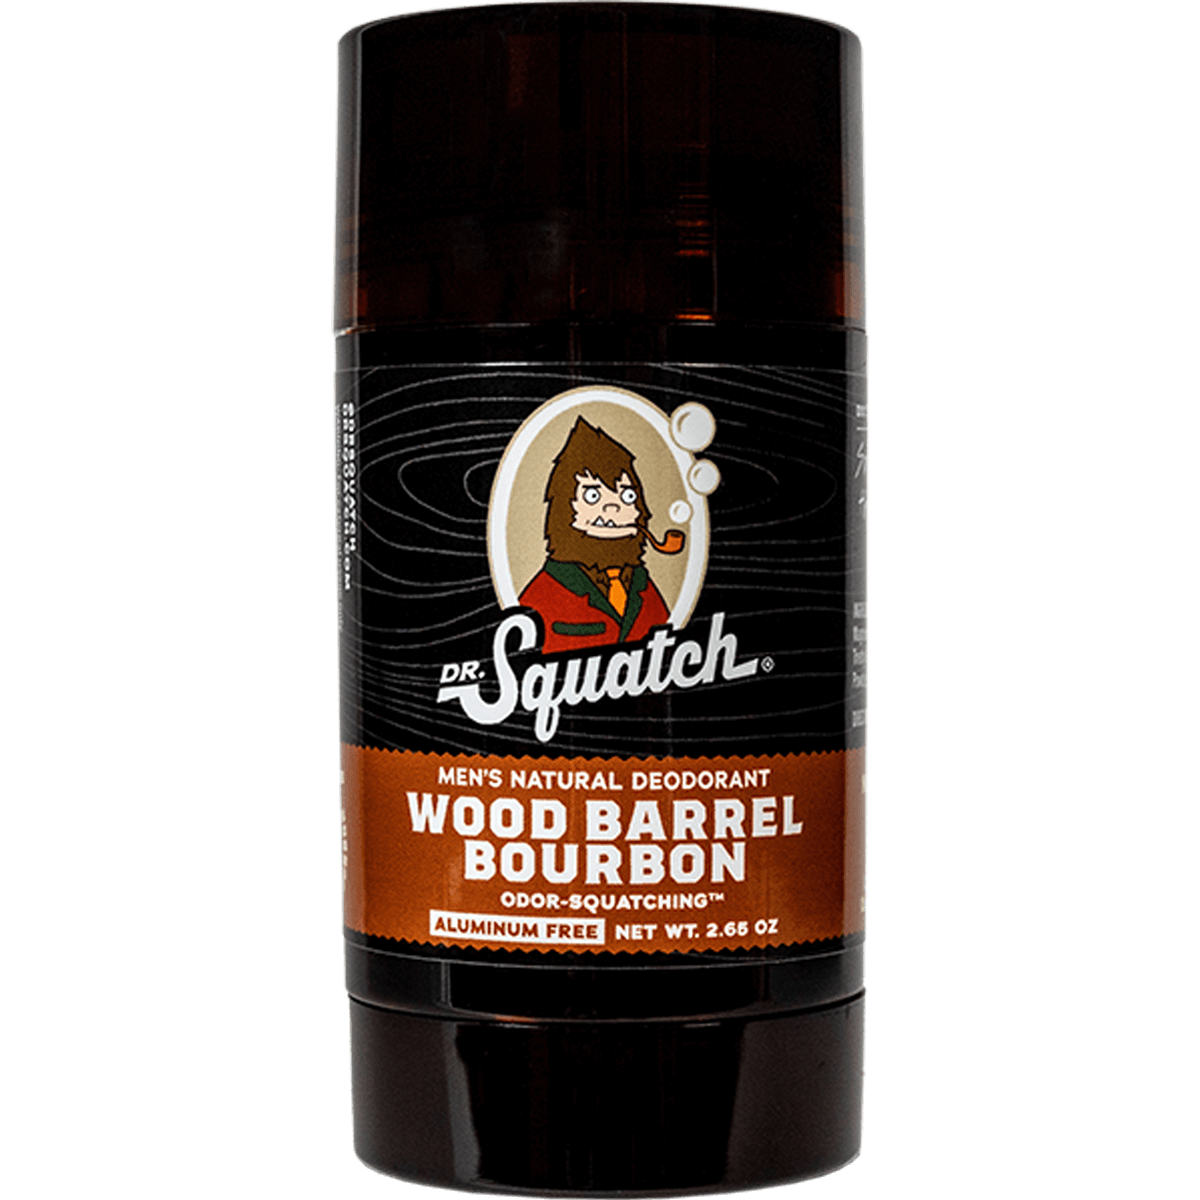 Wood Barrel Bourbon Deodorant - 6 units